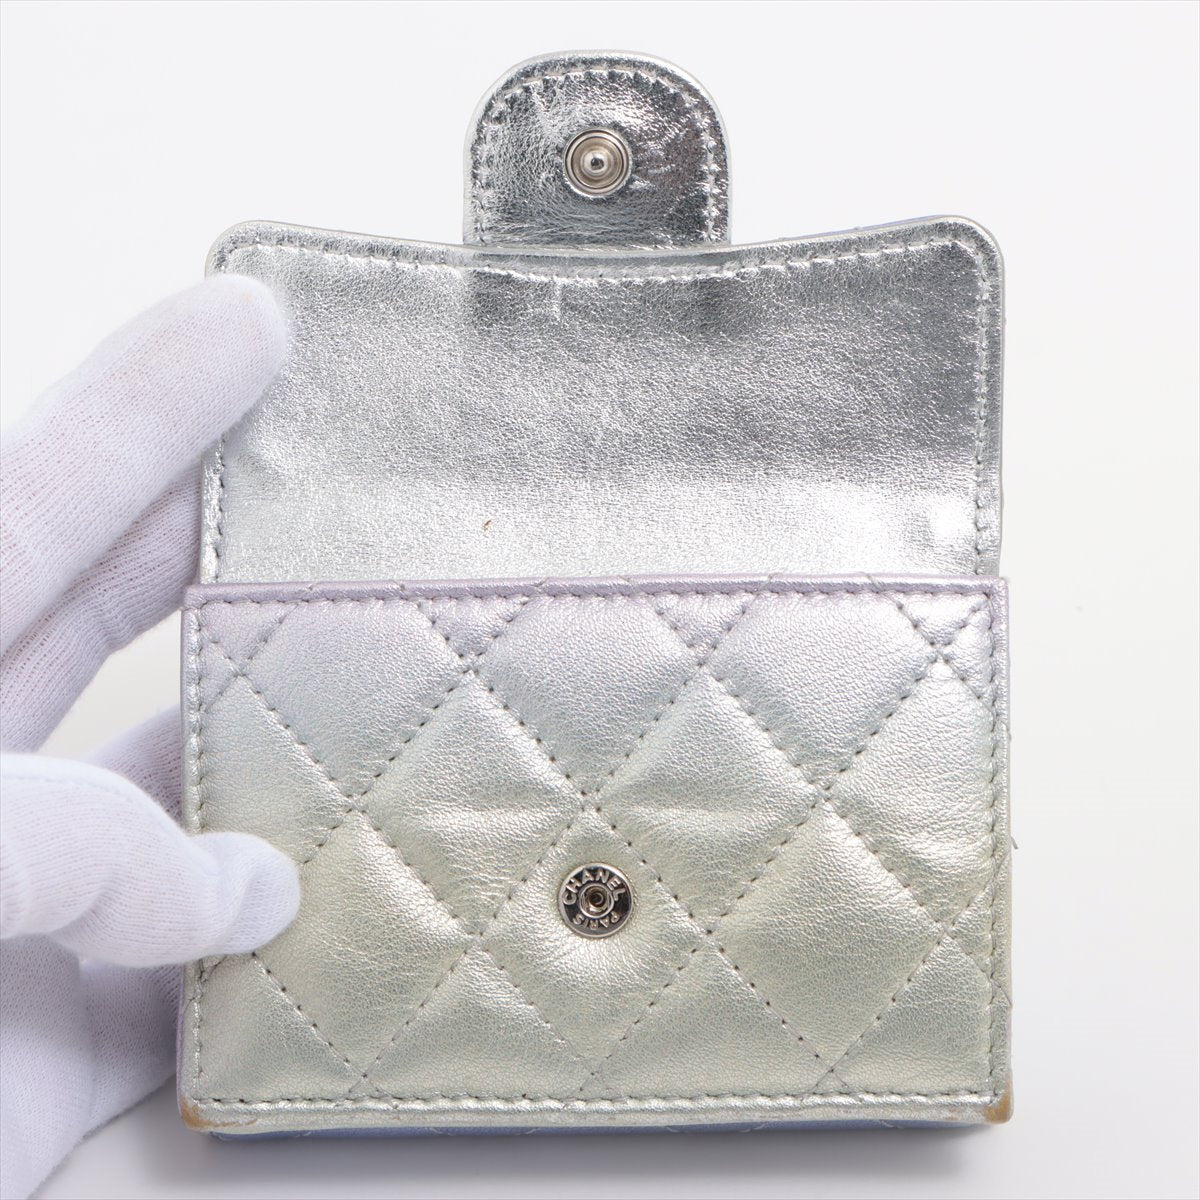 Chanel Matelasse Lambskin Compact Wallet metallic purple Silver Metal fittings 31st Green Gradation